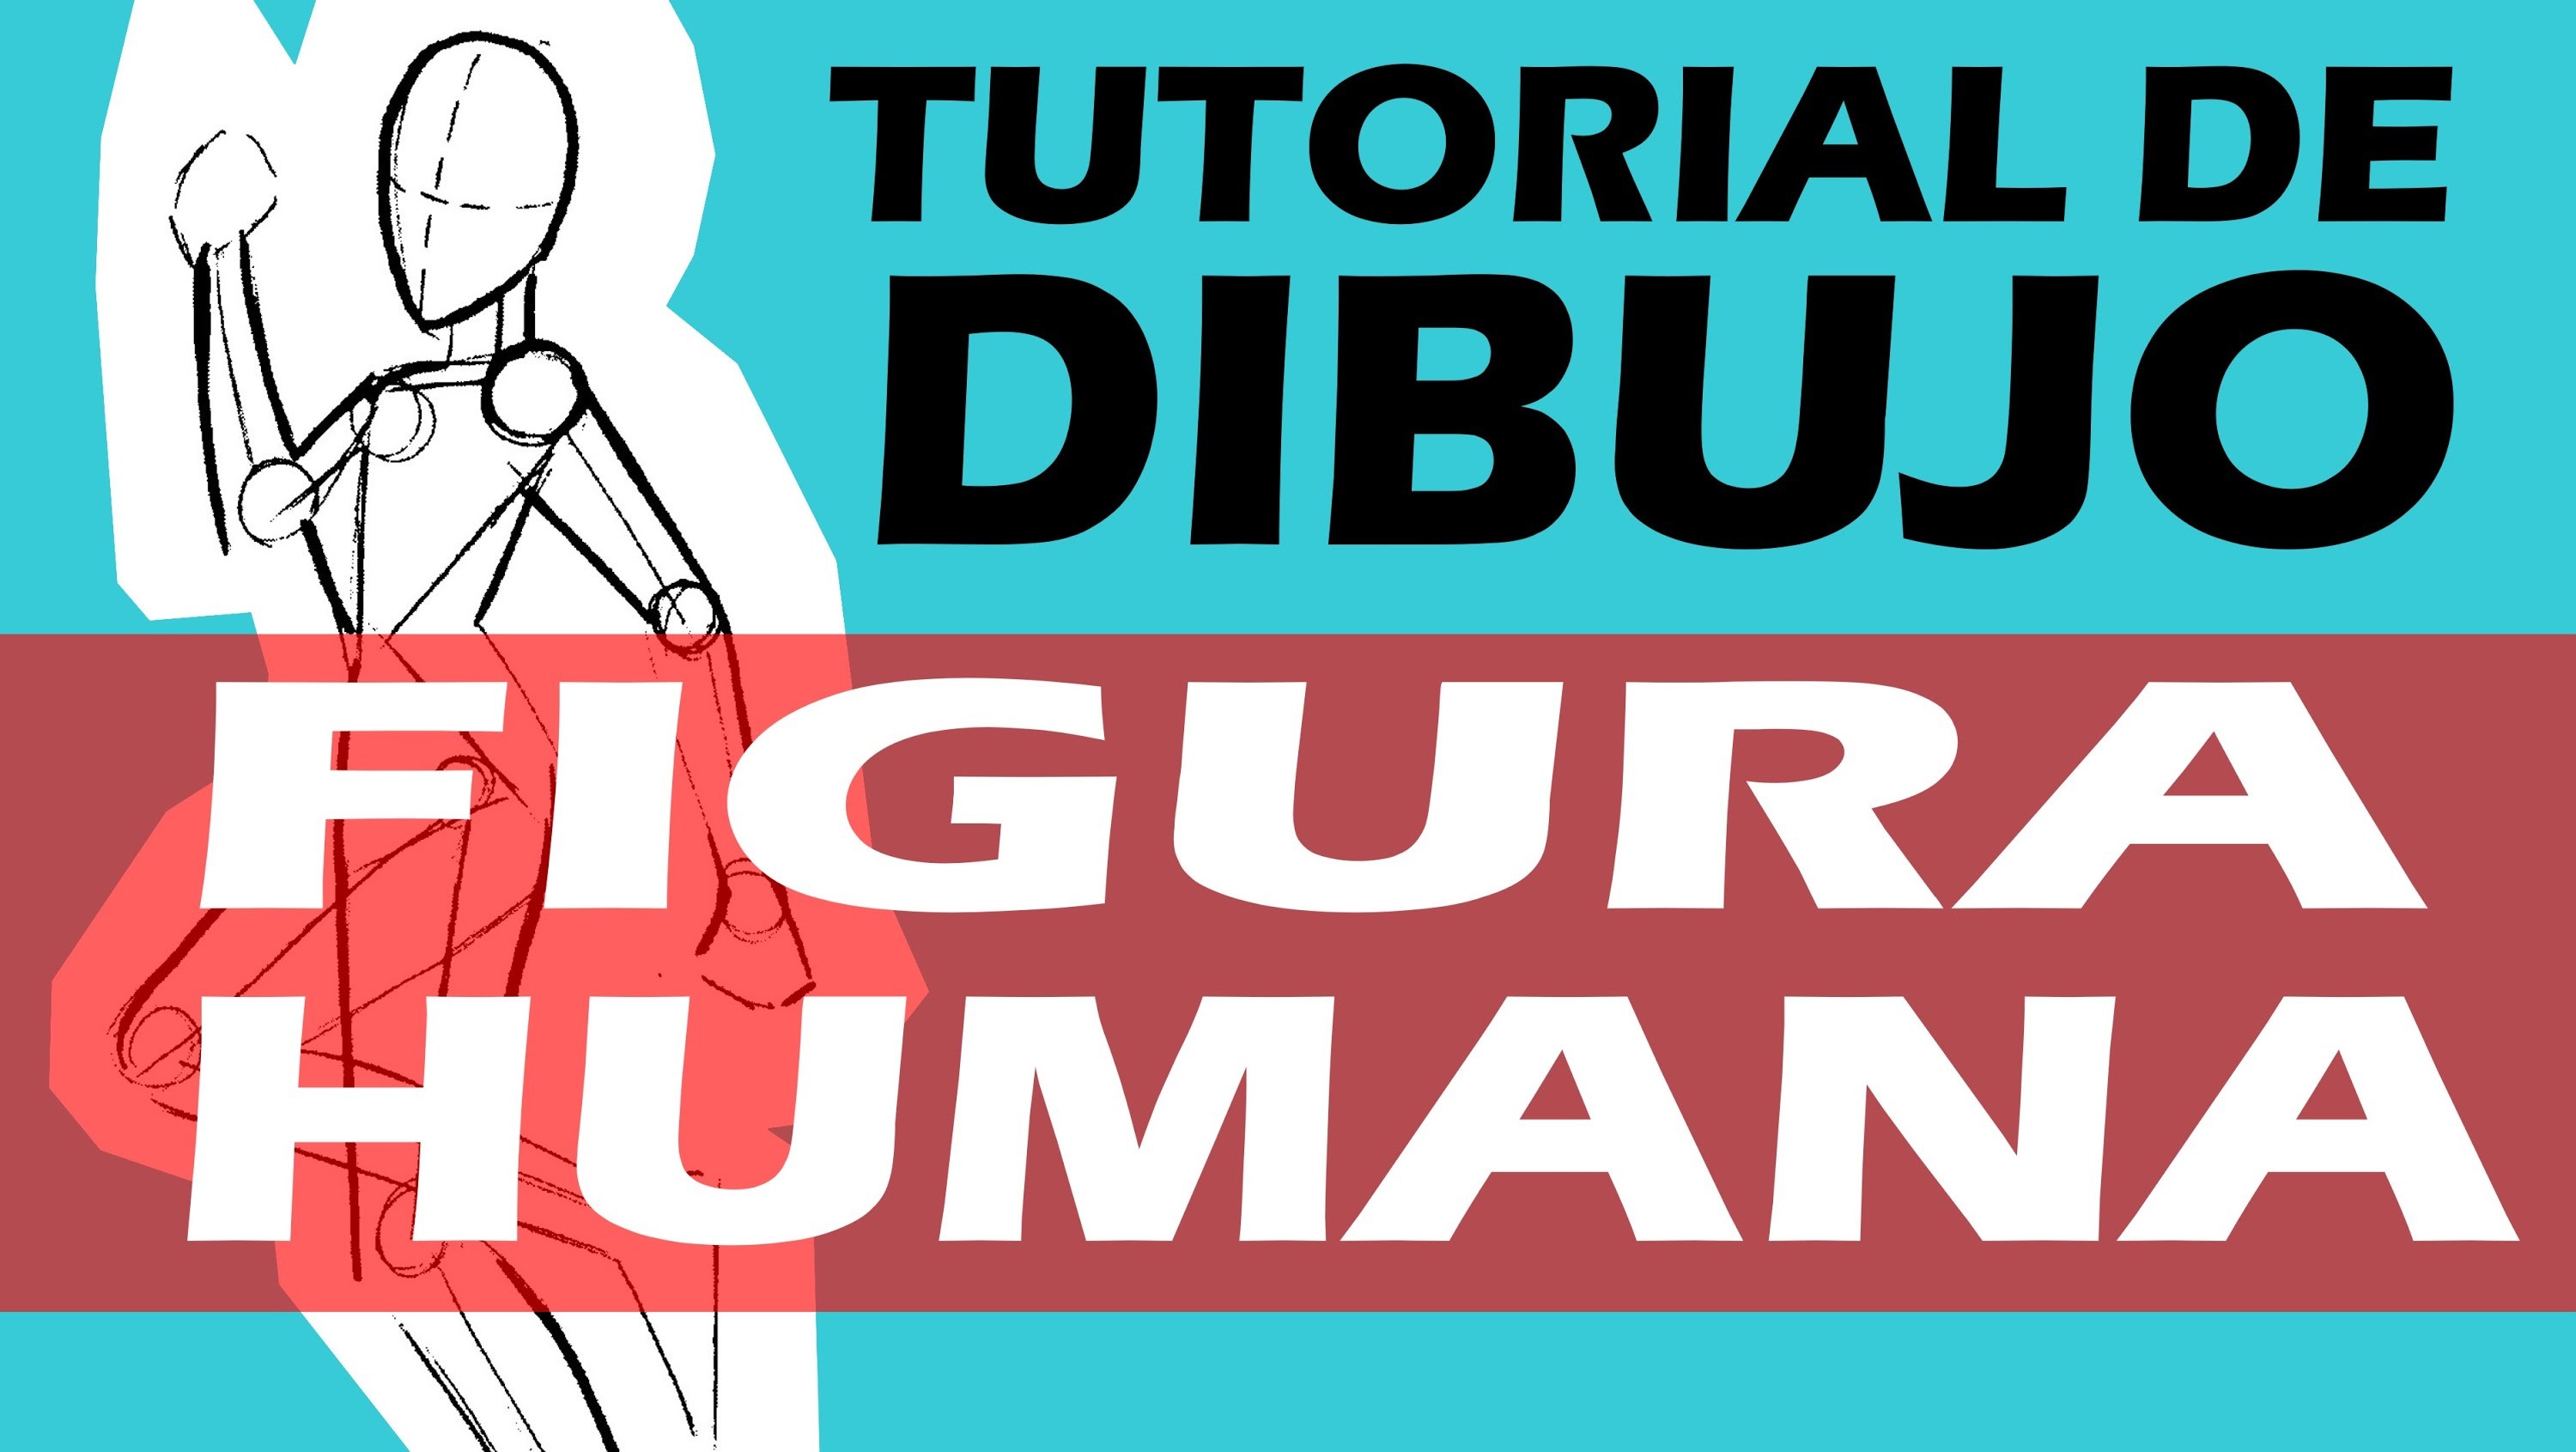 TUTORIAL DE DIBUJO 2:  FIGURA HUMANA. 2 DRAWING TUTORIAL: HUMAN FIGURE